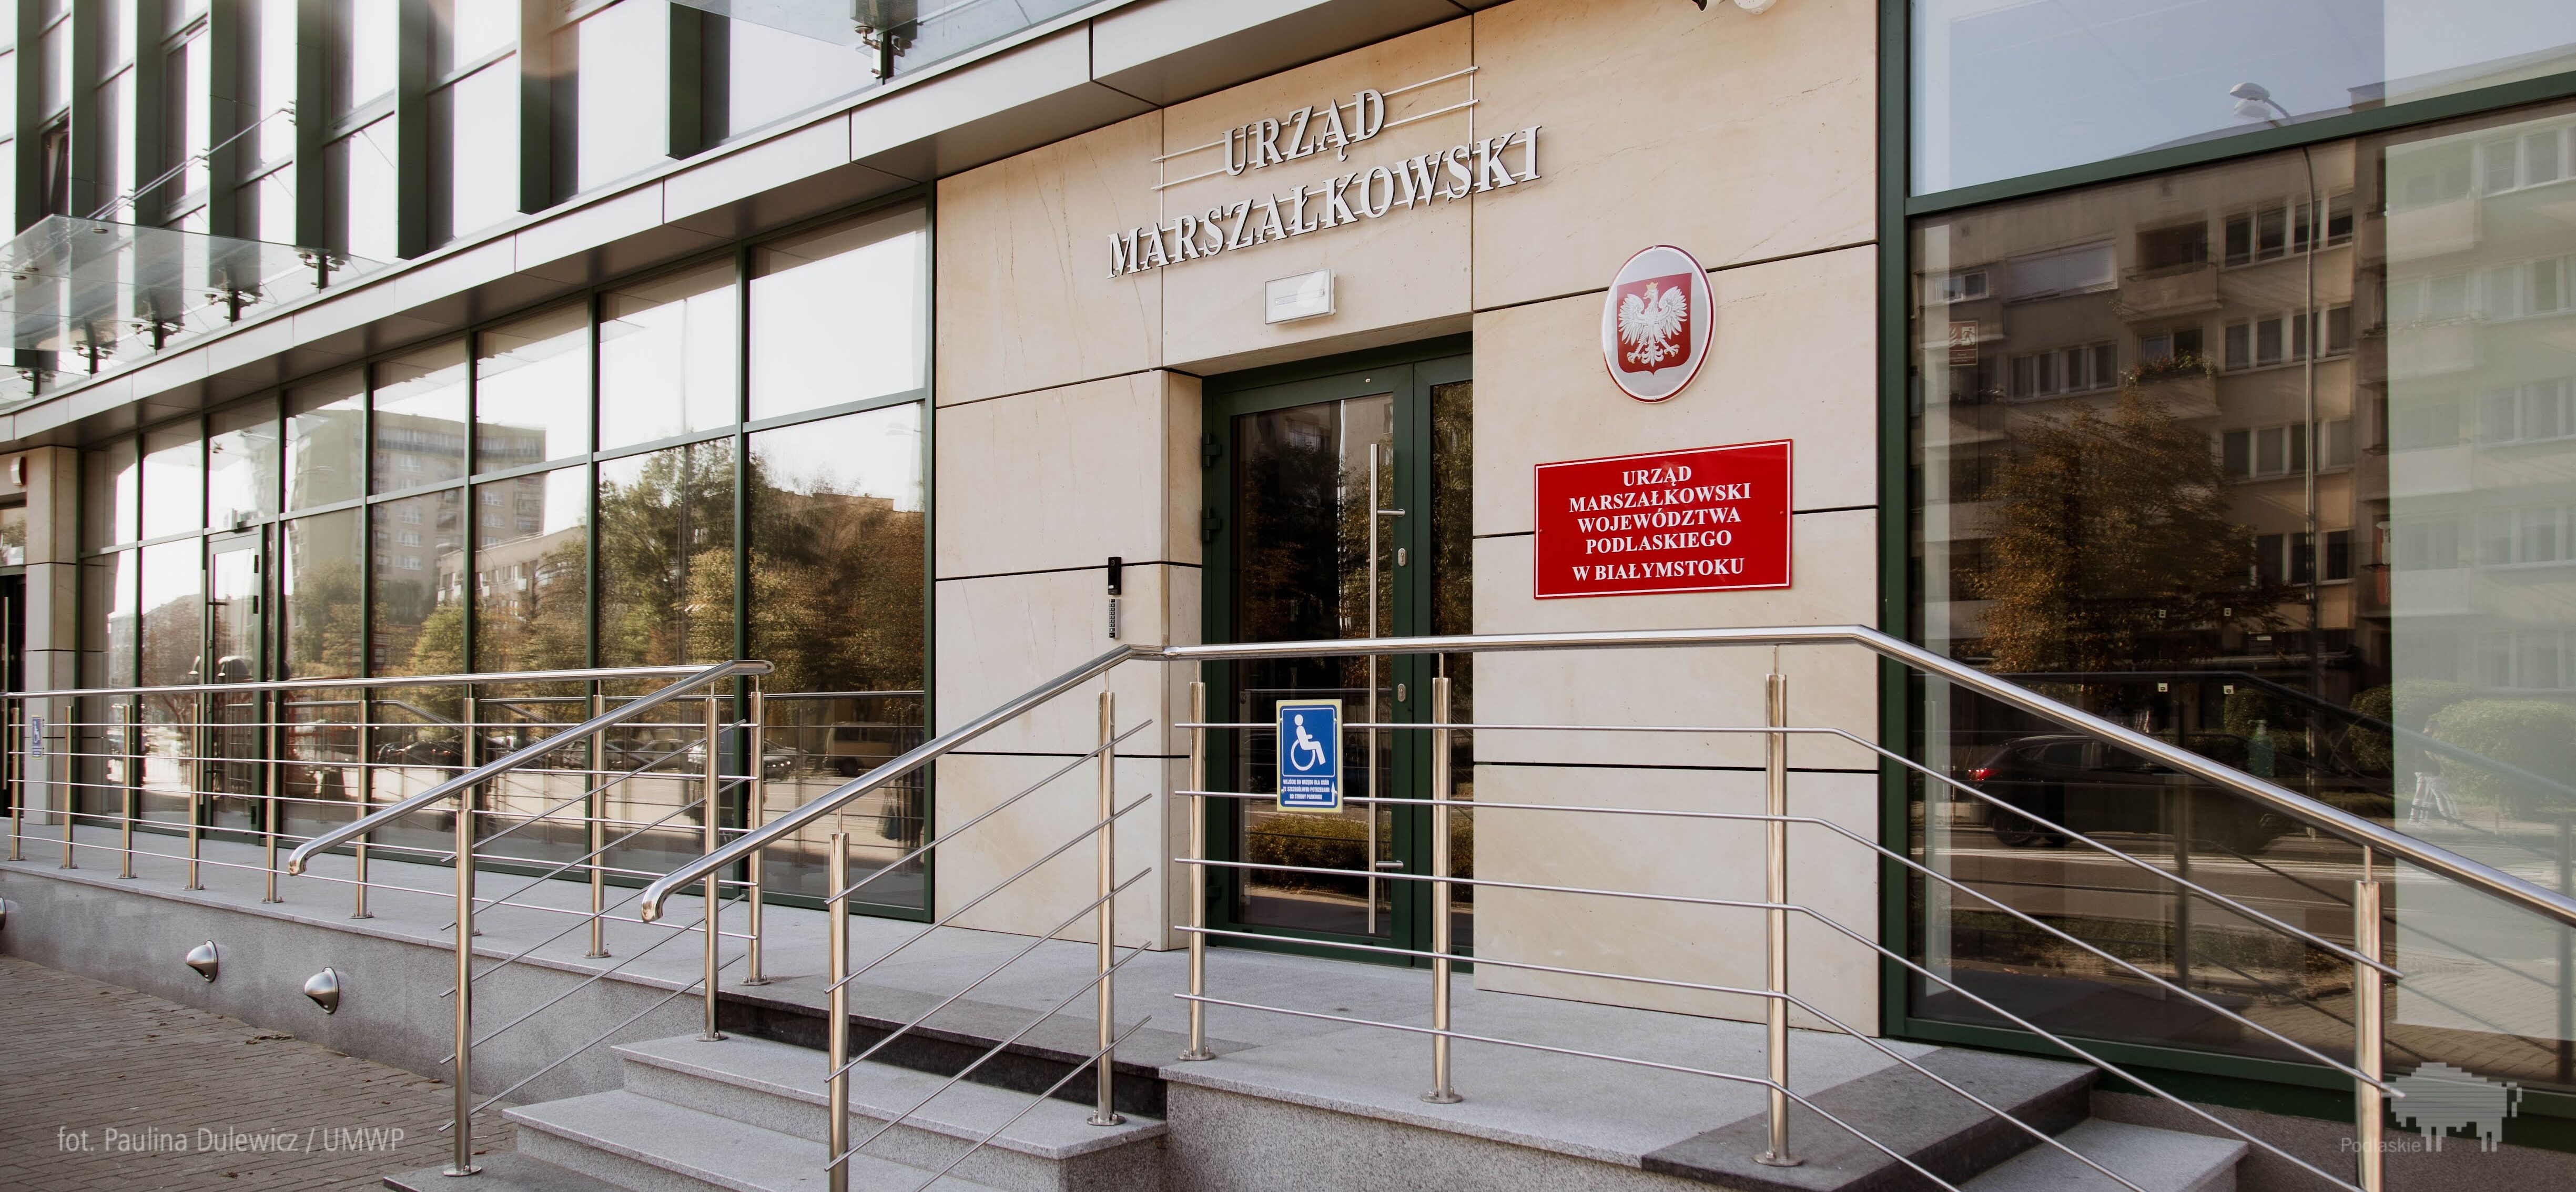 W sobotę 11 maja Urząd Marszałkowski będzie otwarty